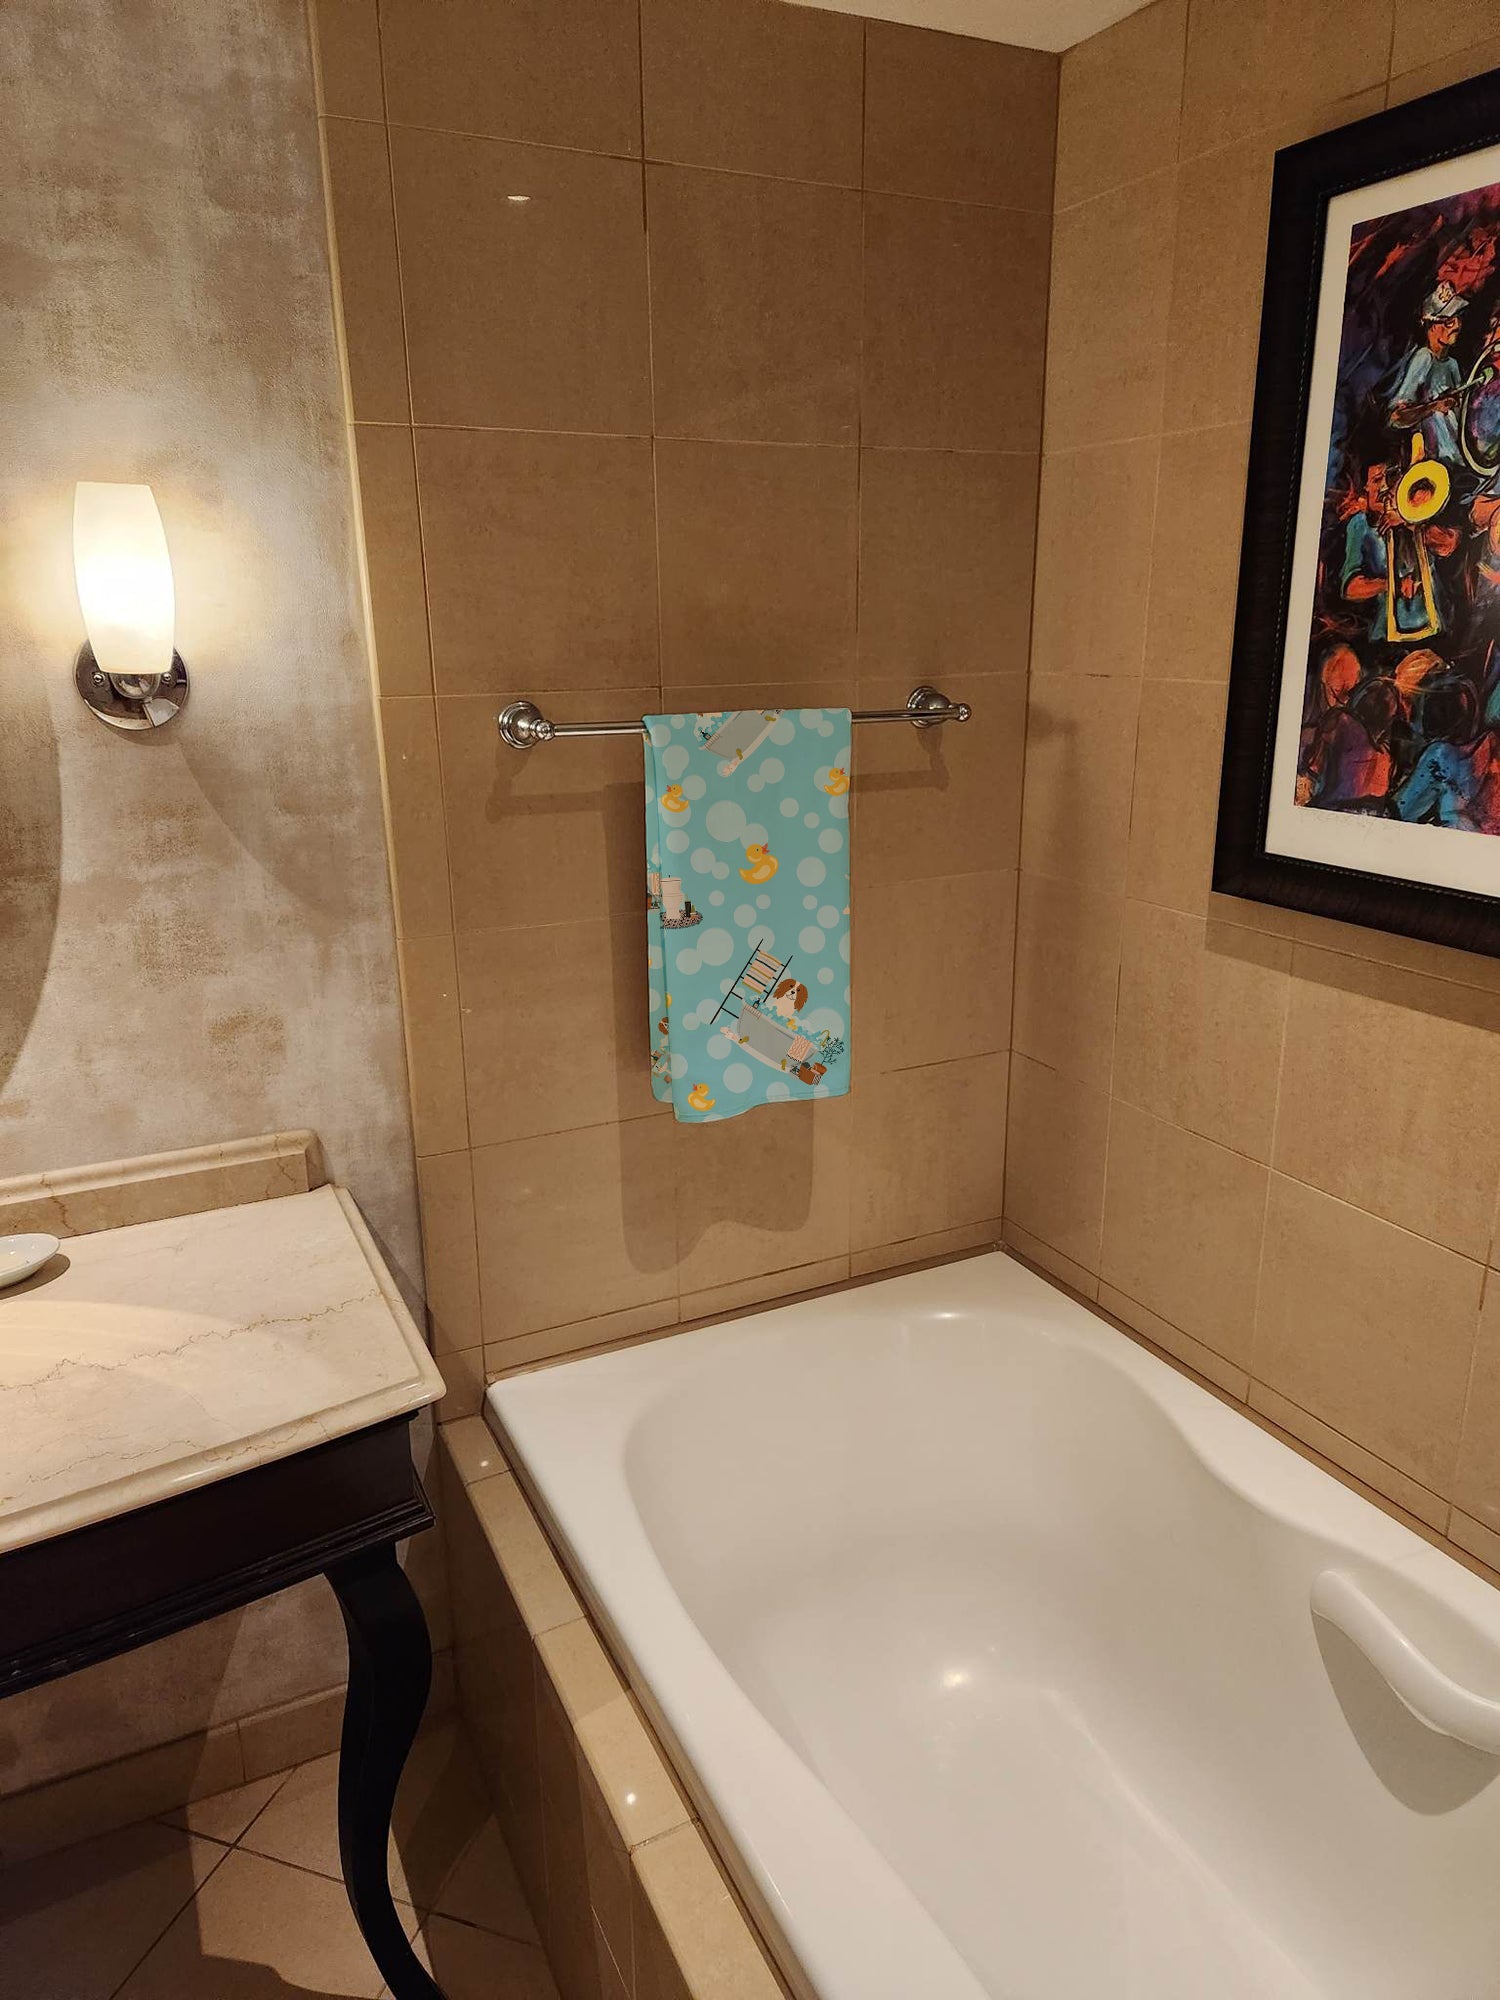 Buy this Cavalier Spaniel in Bathtub Bath Towel Large